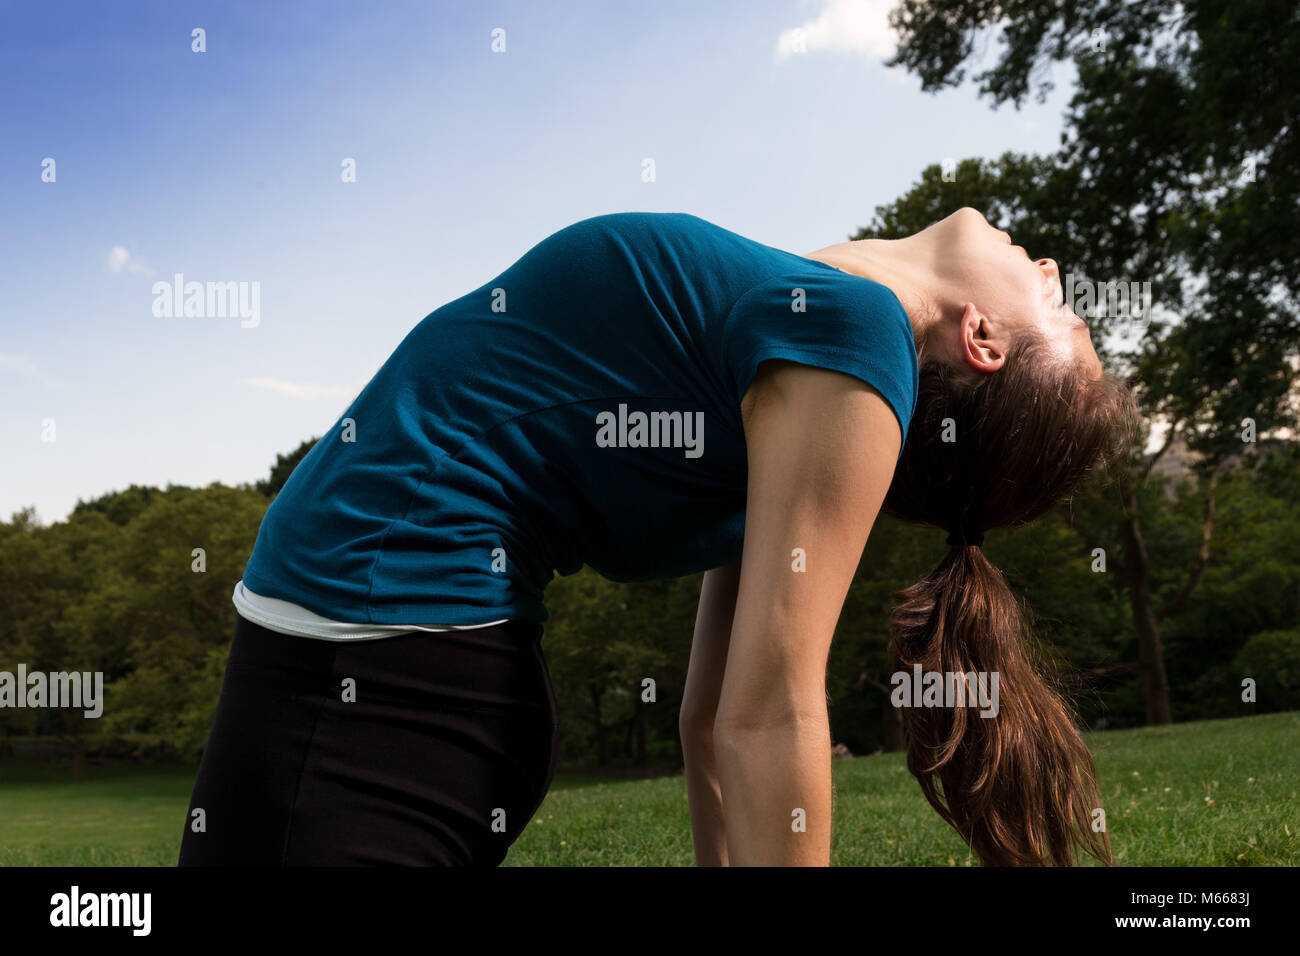 Junge kaukasier Frau übt Yoga im Central Park in New York City während trägt ein blaues Top, schwarze Leggings und barfuss Stockfoto